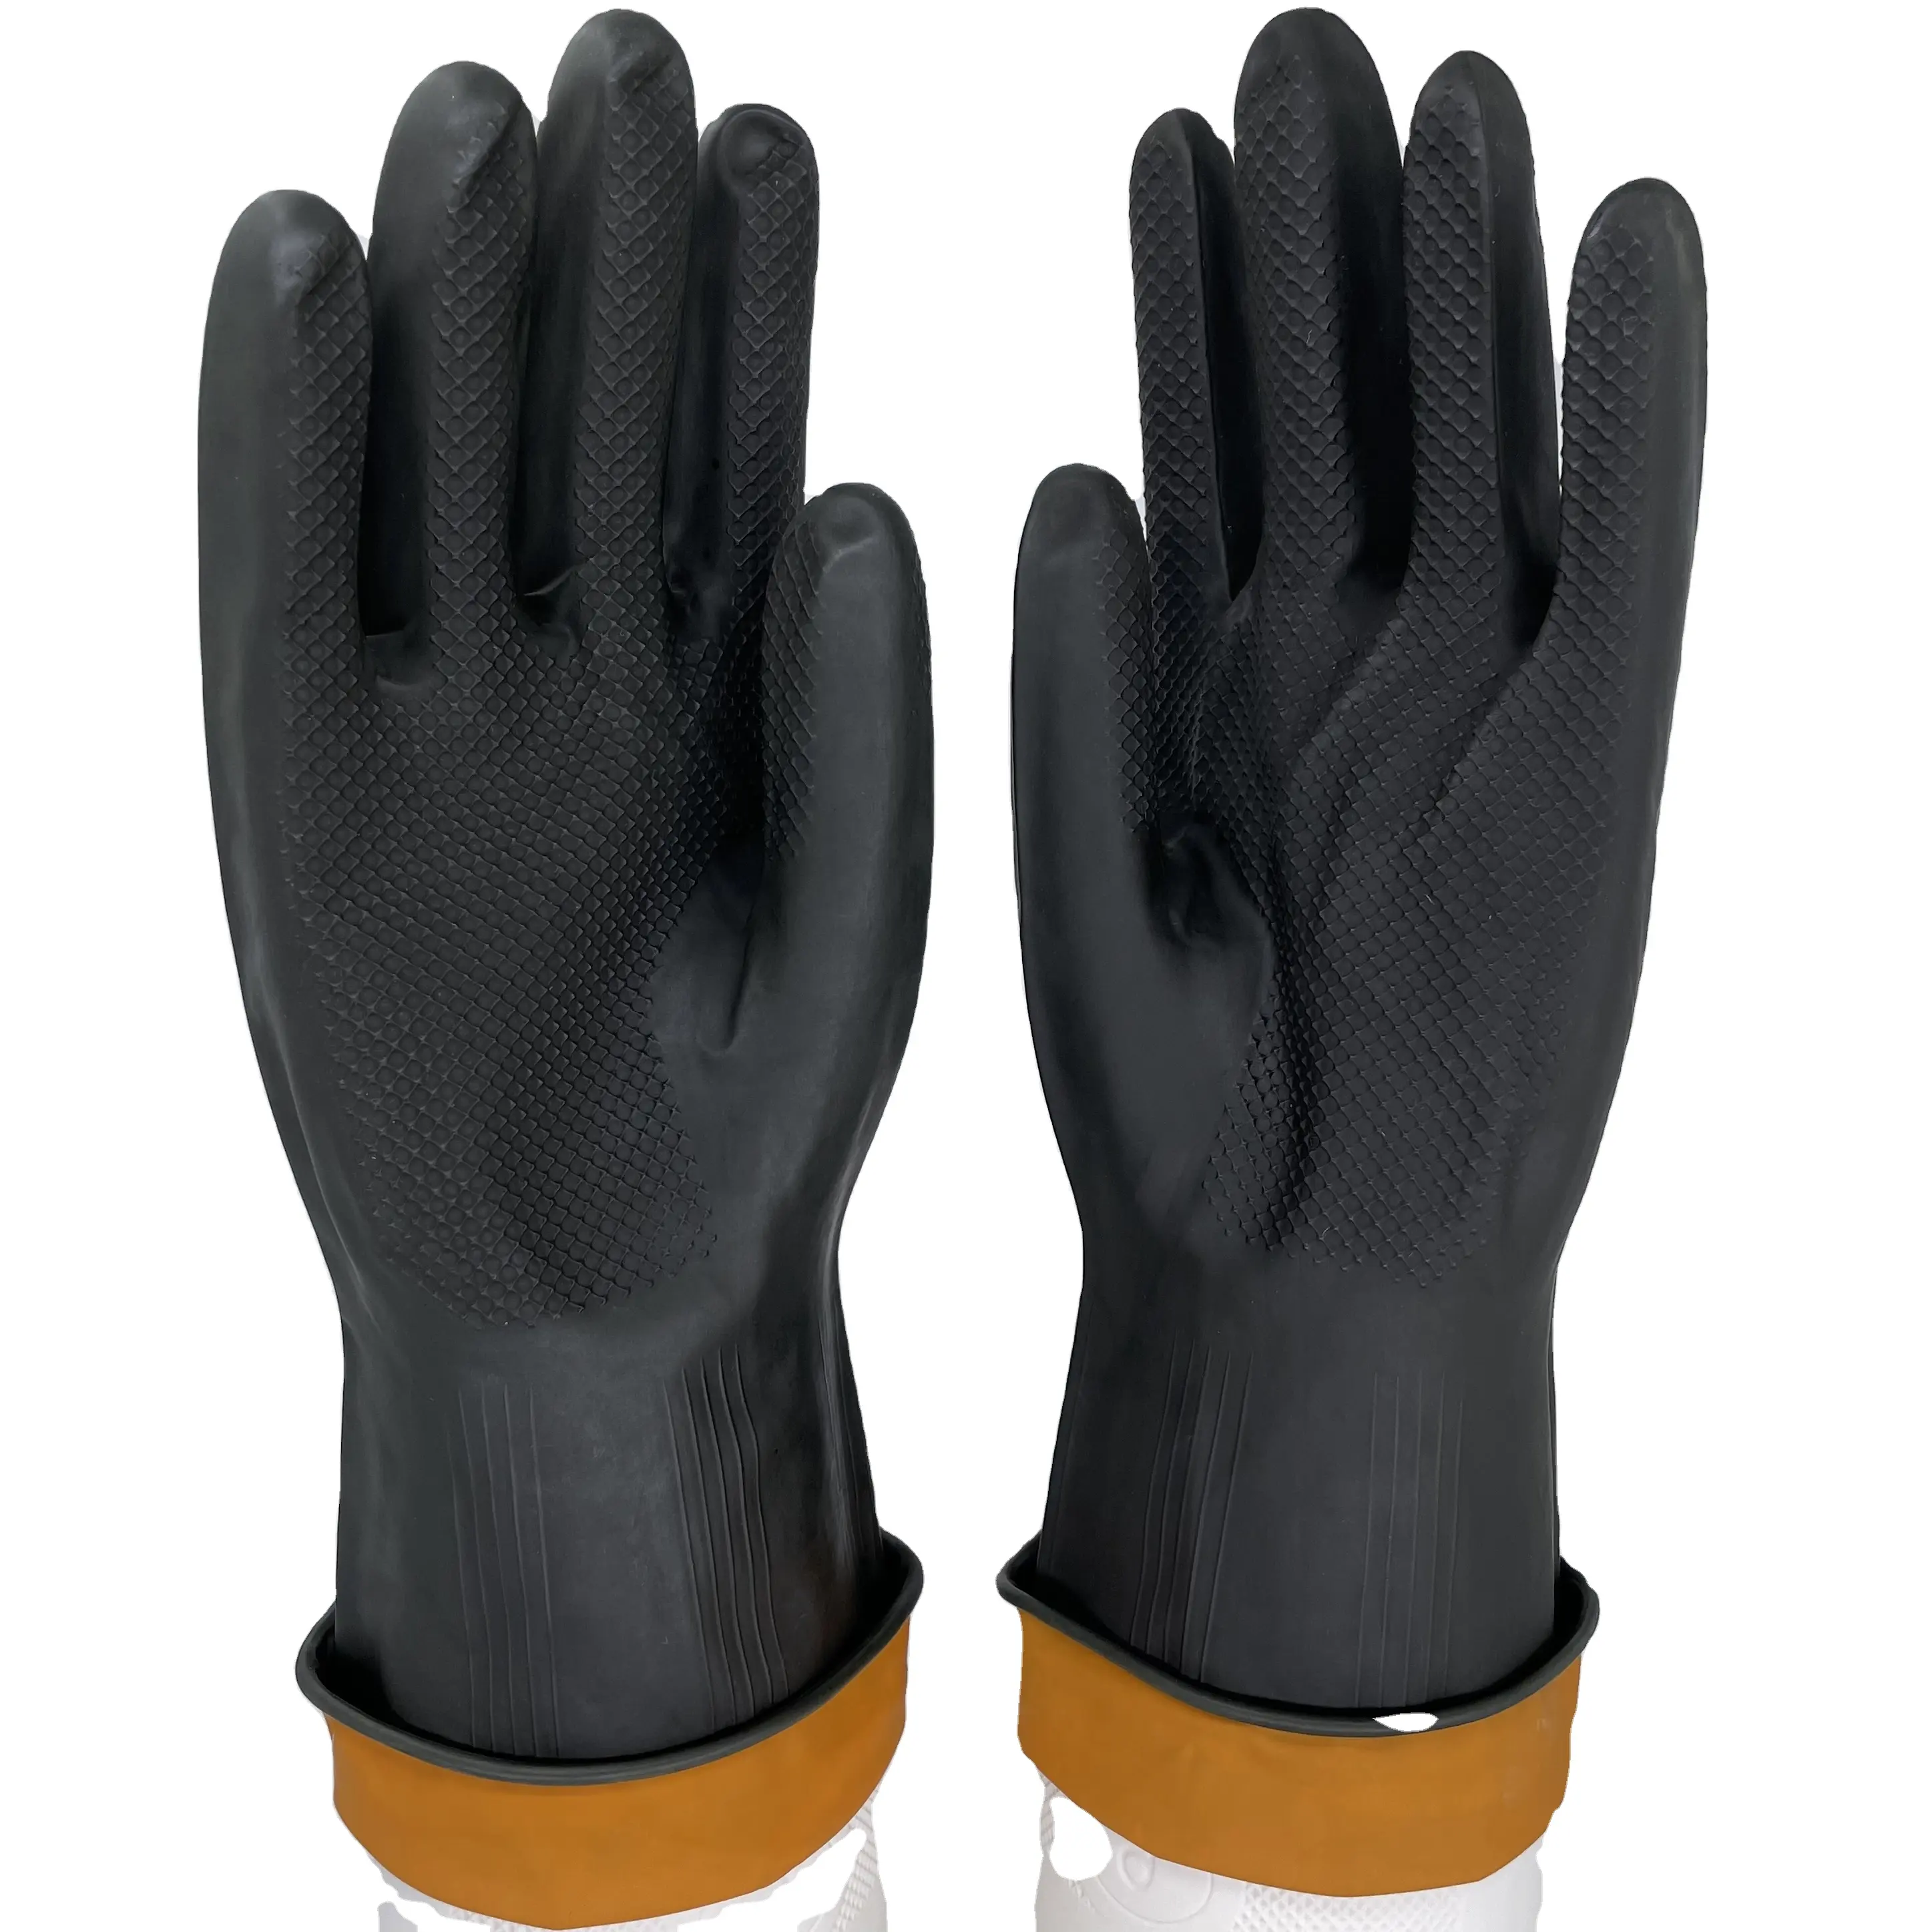 EN388 sarung tangan karet lateks alami tebal, sarung tangan industri tahan kimia tidak alergi dapat digunakan kembali